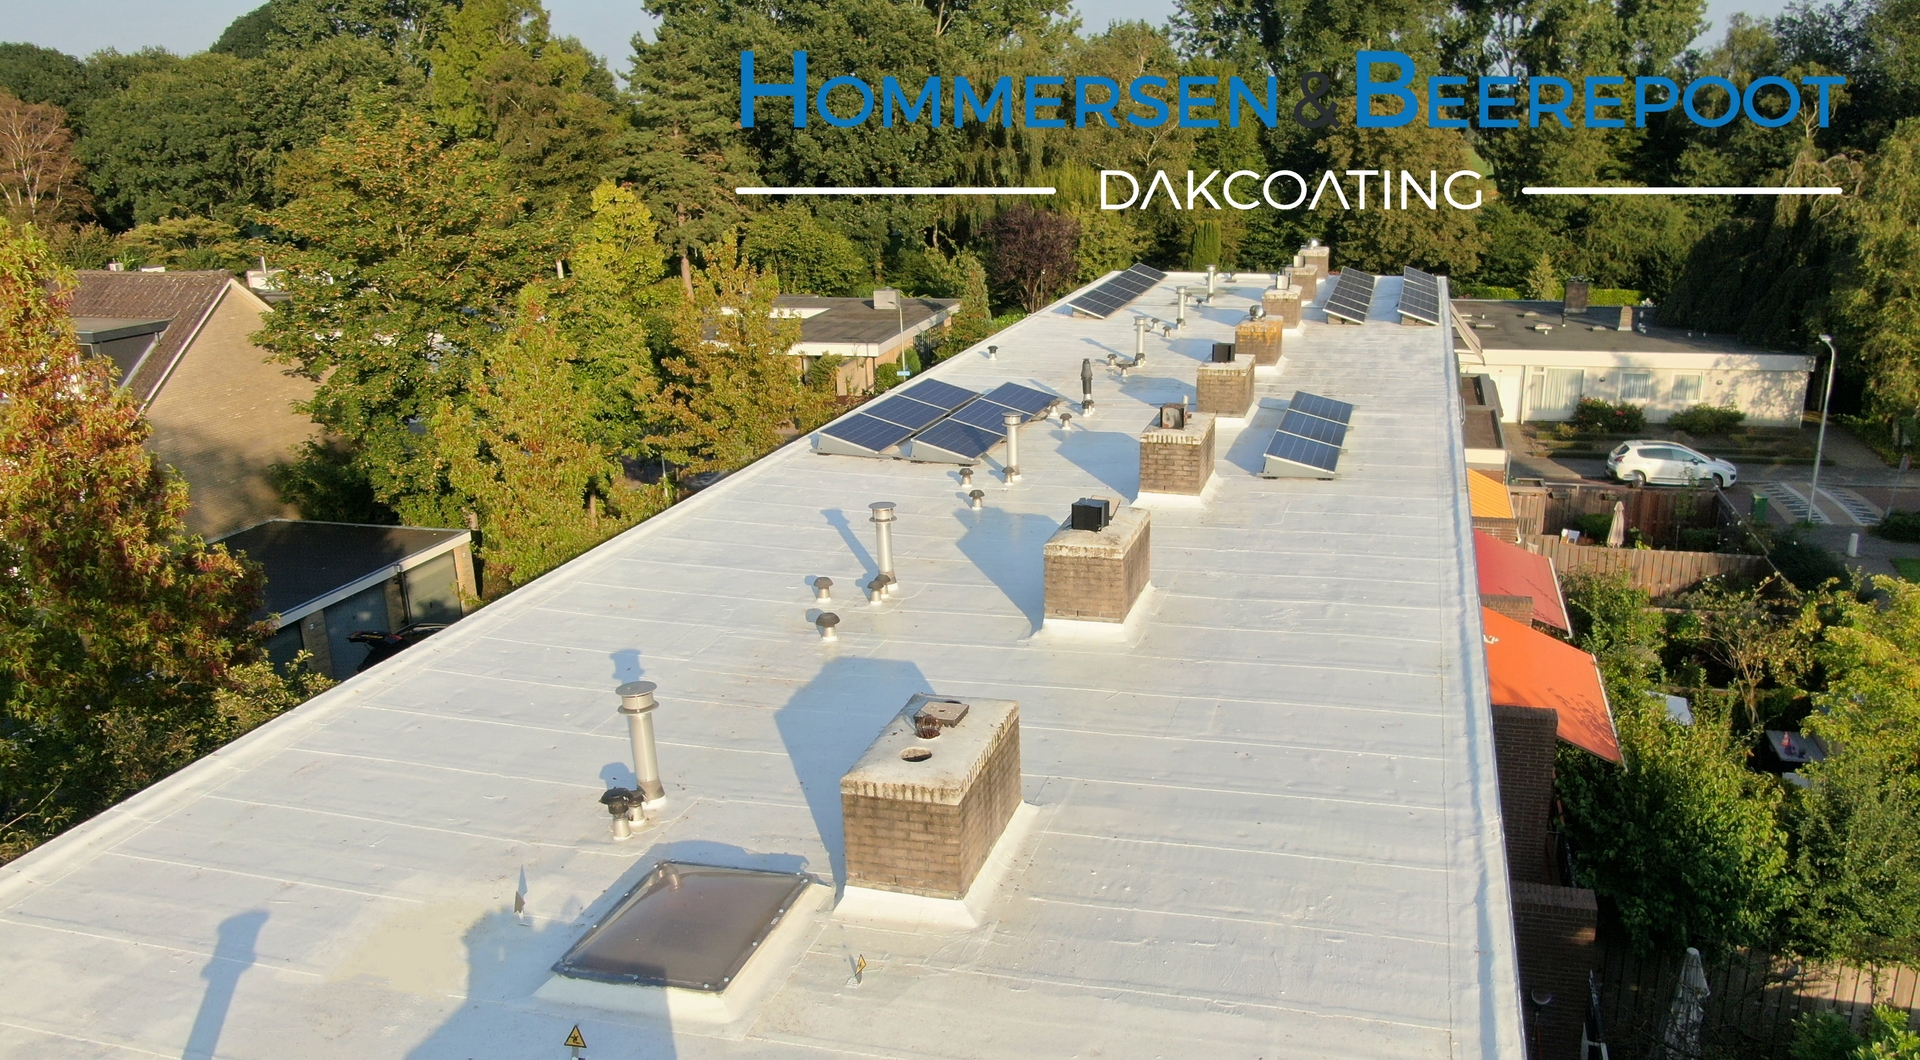 Voordelen witte dakbedekking | Hommersen & Beerepoot dakcoating